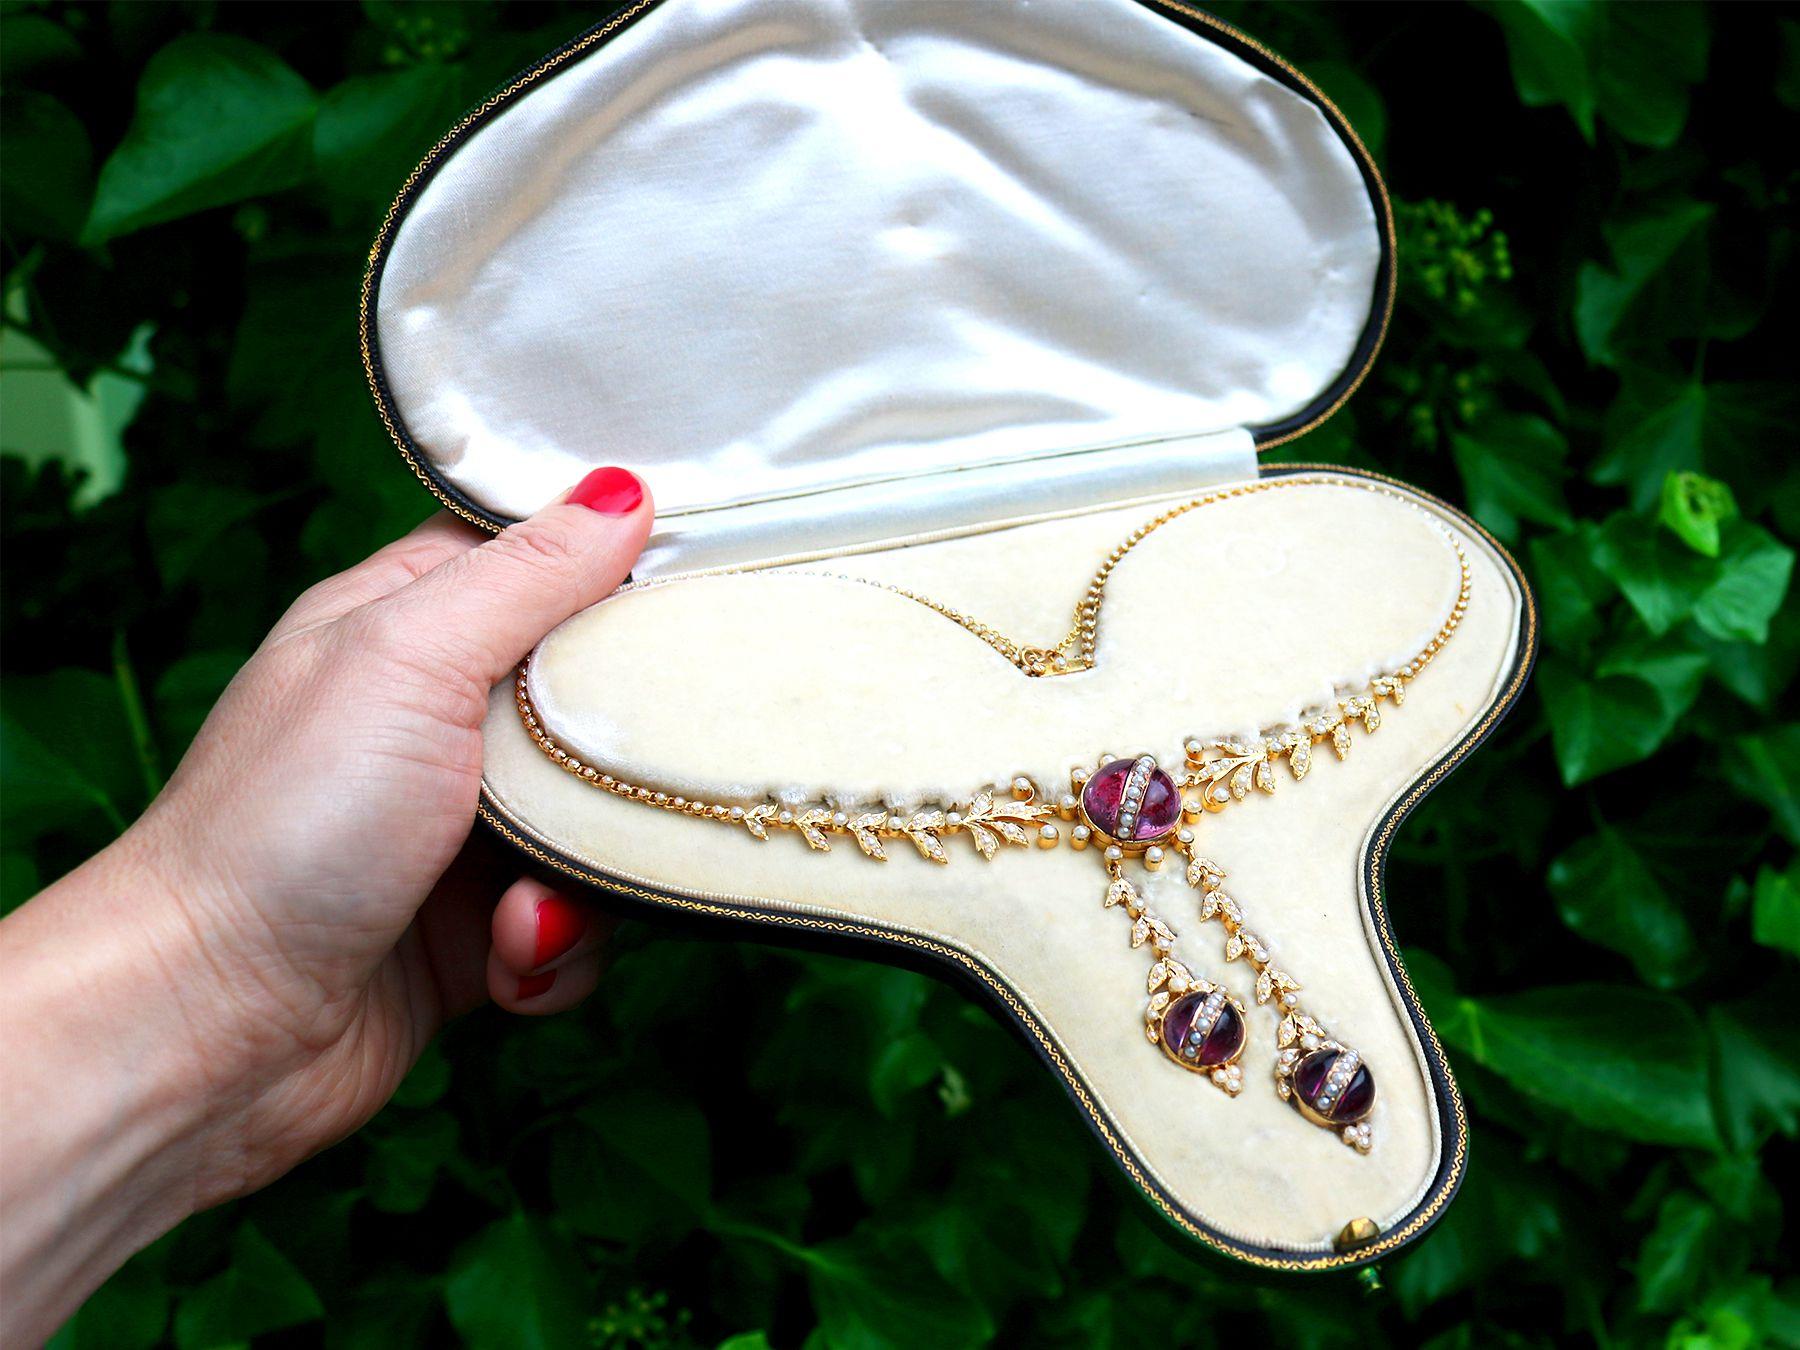 Eine atemberaubende antike viktorianische Perlenkette mit Kristall und 15 Karat Gelbgold; Teil unserer vielfältigen antiken Schmucksammlungen.

Diese atemberaubende, feine und beeindruckende antike Halskette wurde aus 15 Karat Gelbgold